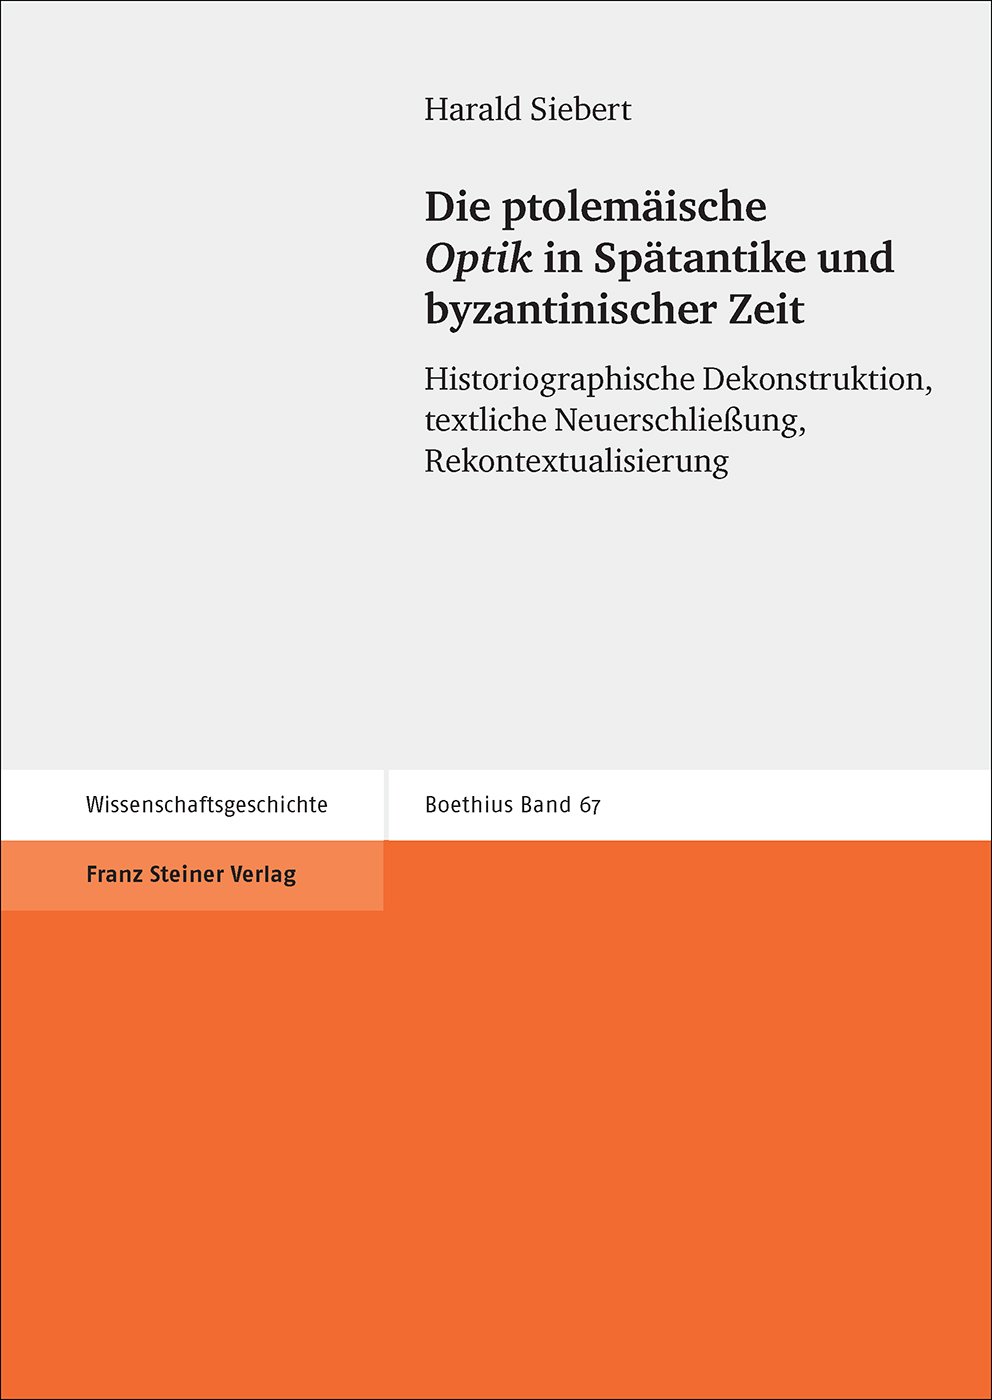 Die ptolemäische "Optik" in Spätantike und byzantinischer Zeit